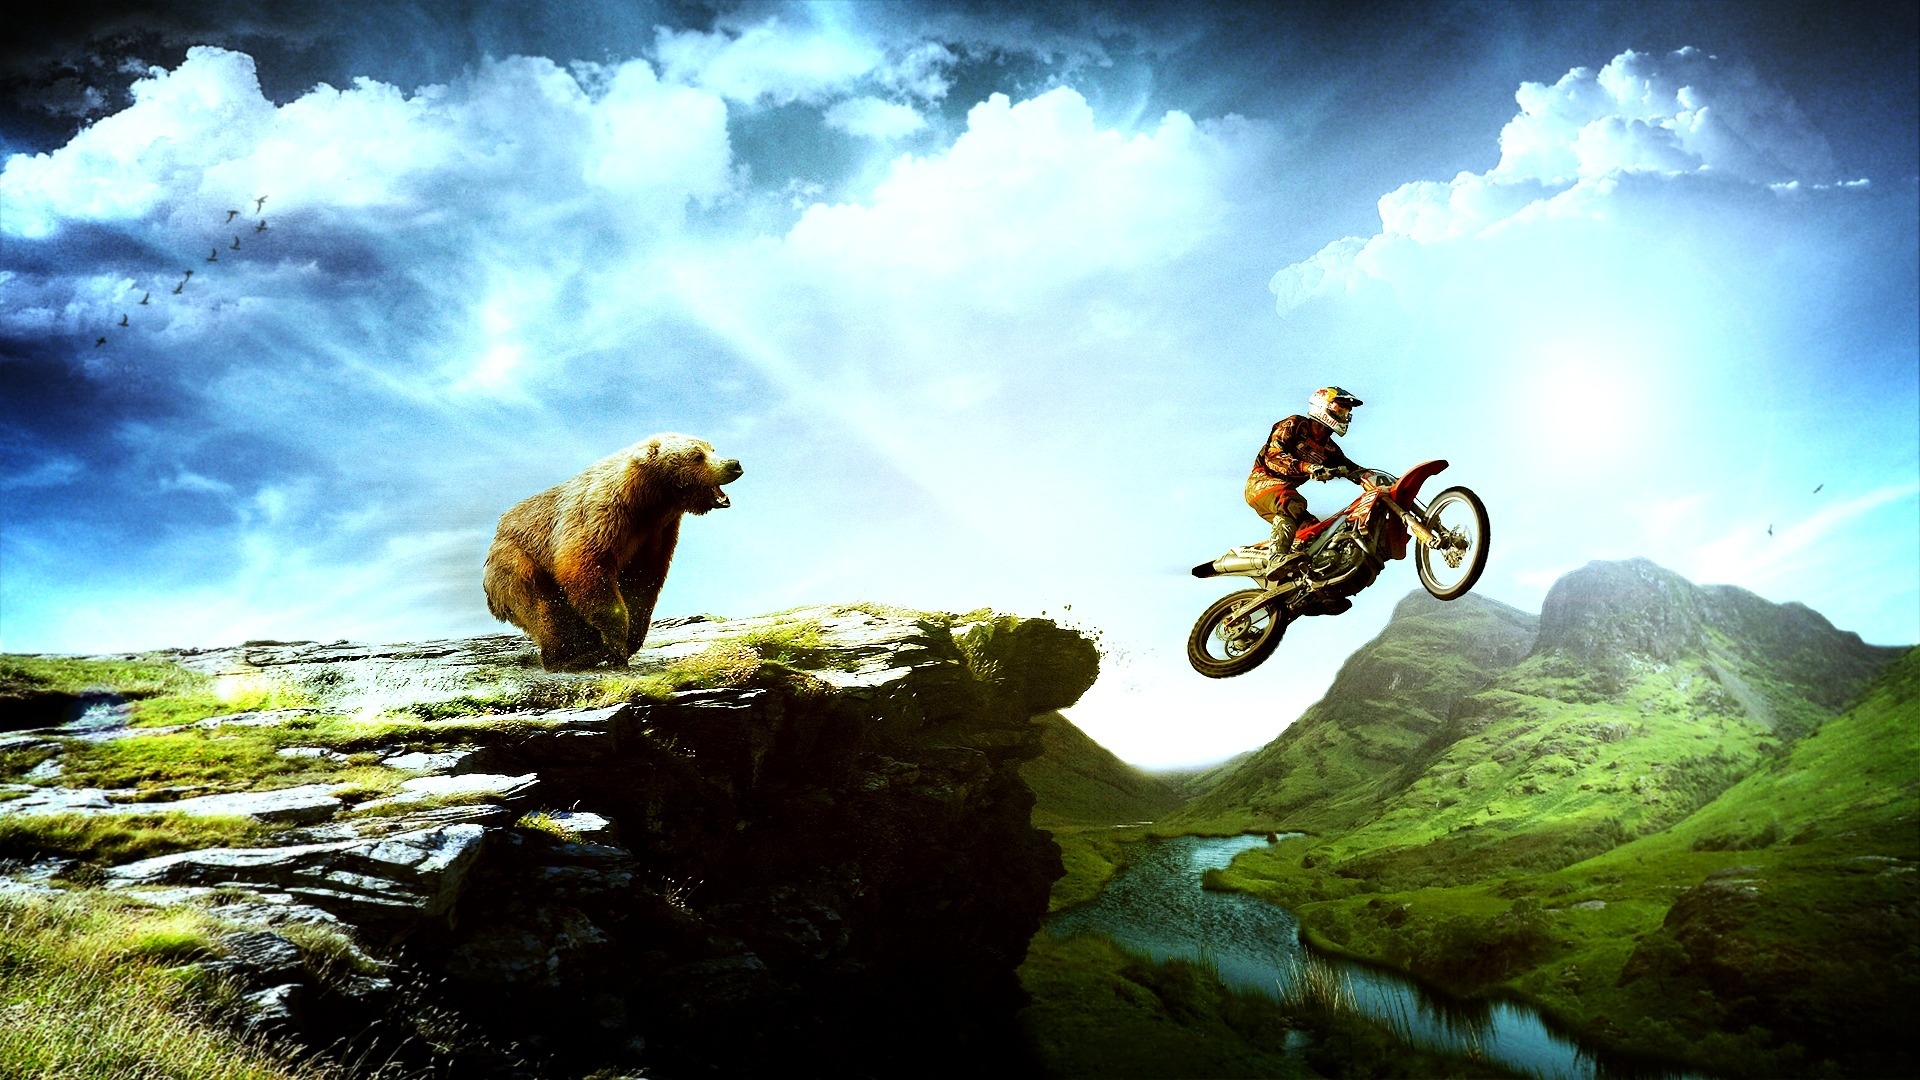 moto x jouer fonds d'écran hd,la nature,véhicule,ciel,sport extrême,vélo de montagne